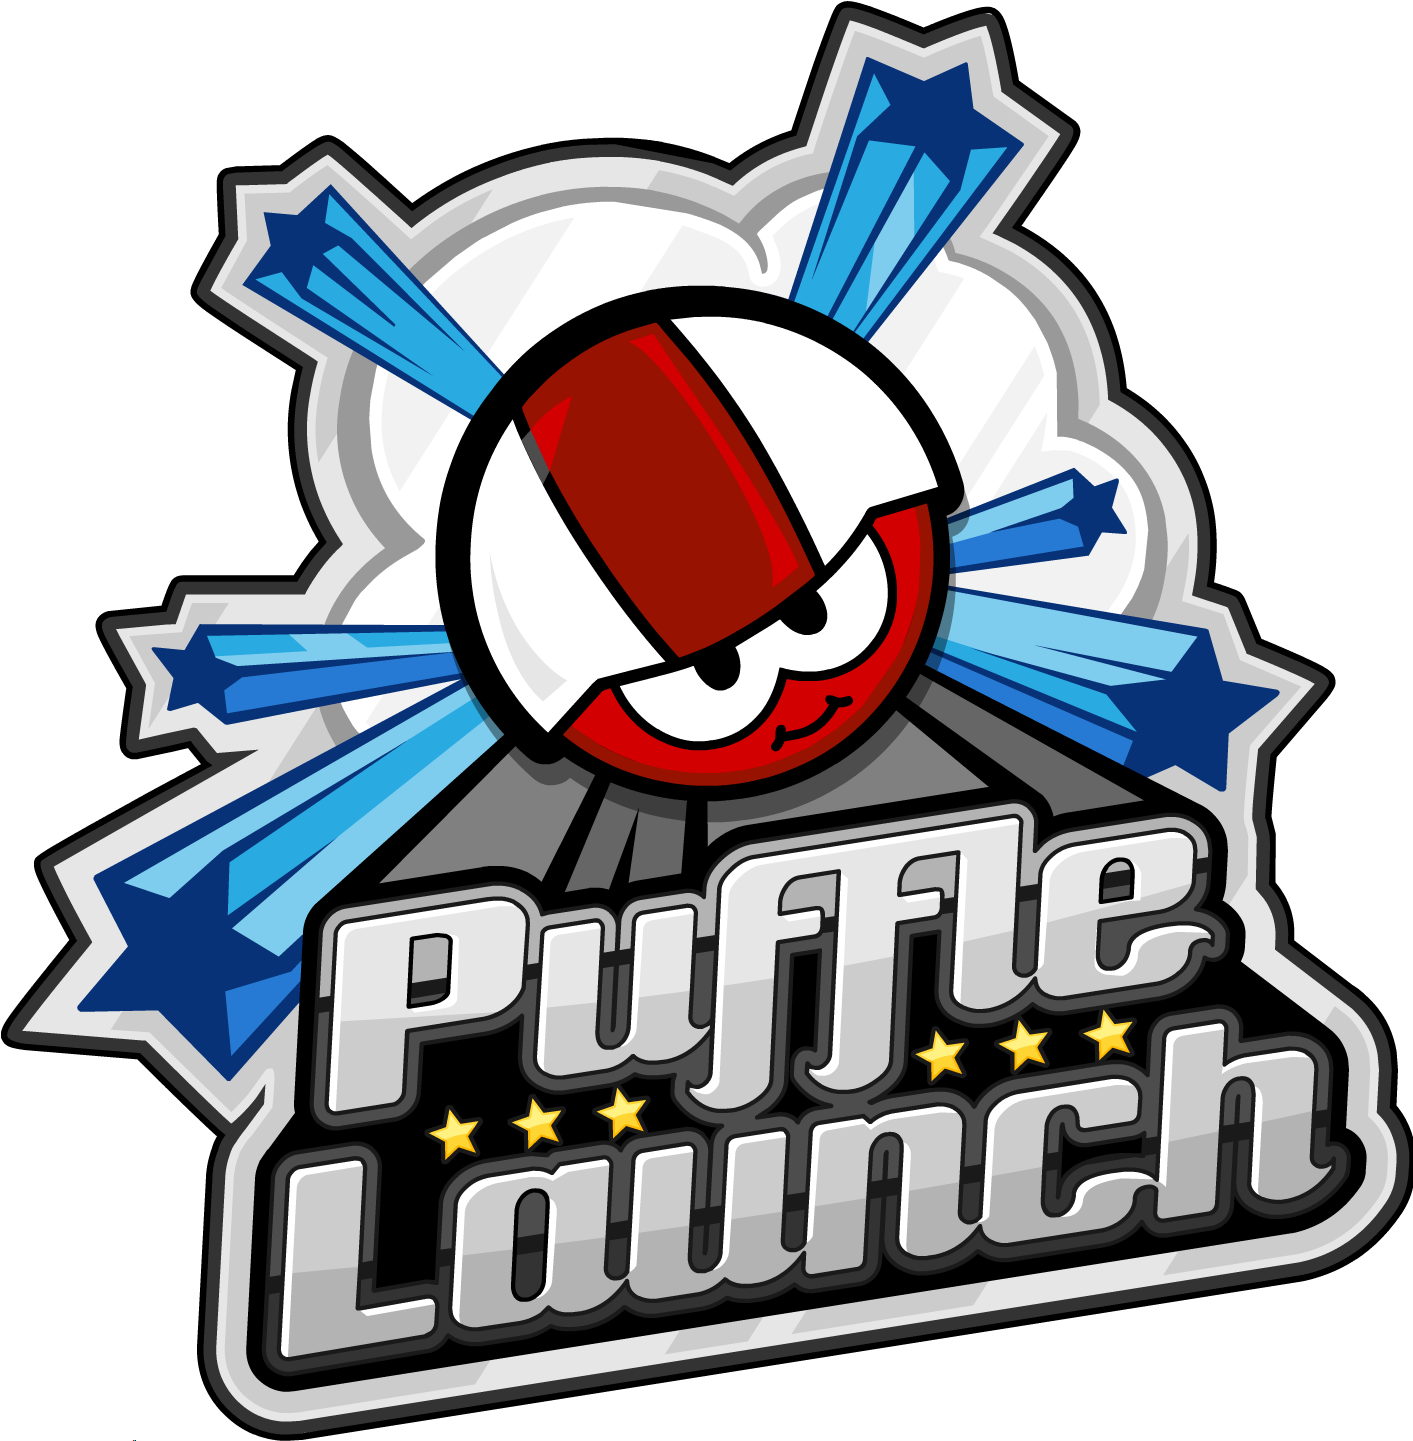 Puffle Launch - Club Penguin Puffle Launch Logo (1440x1440)